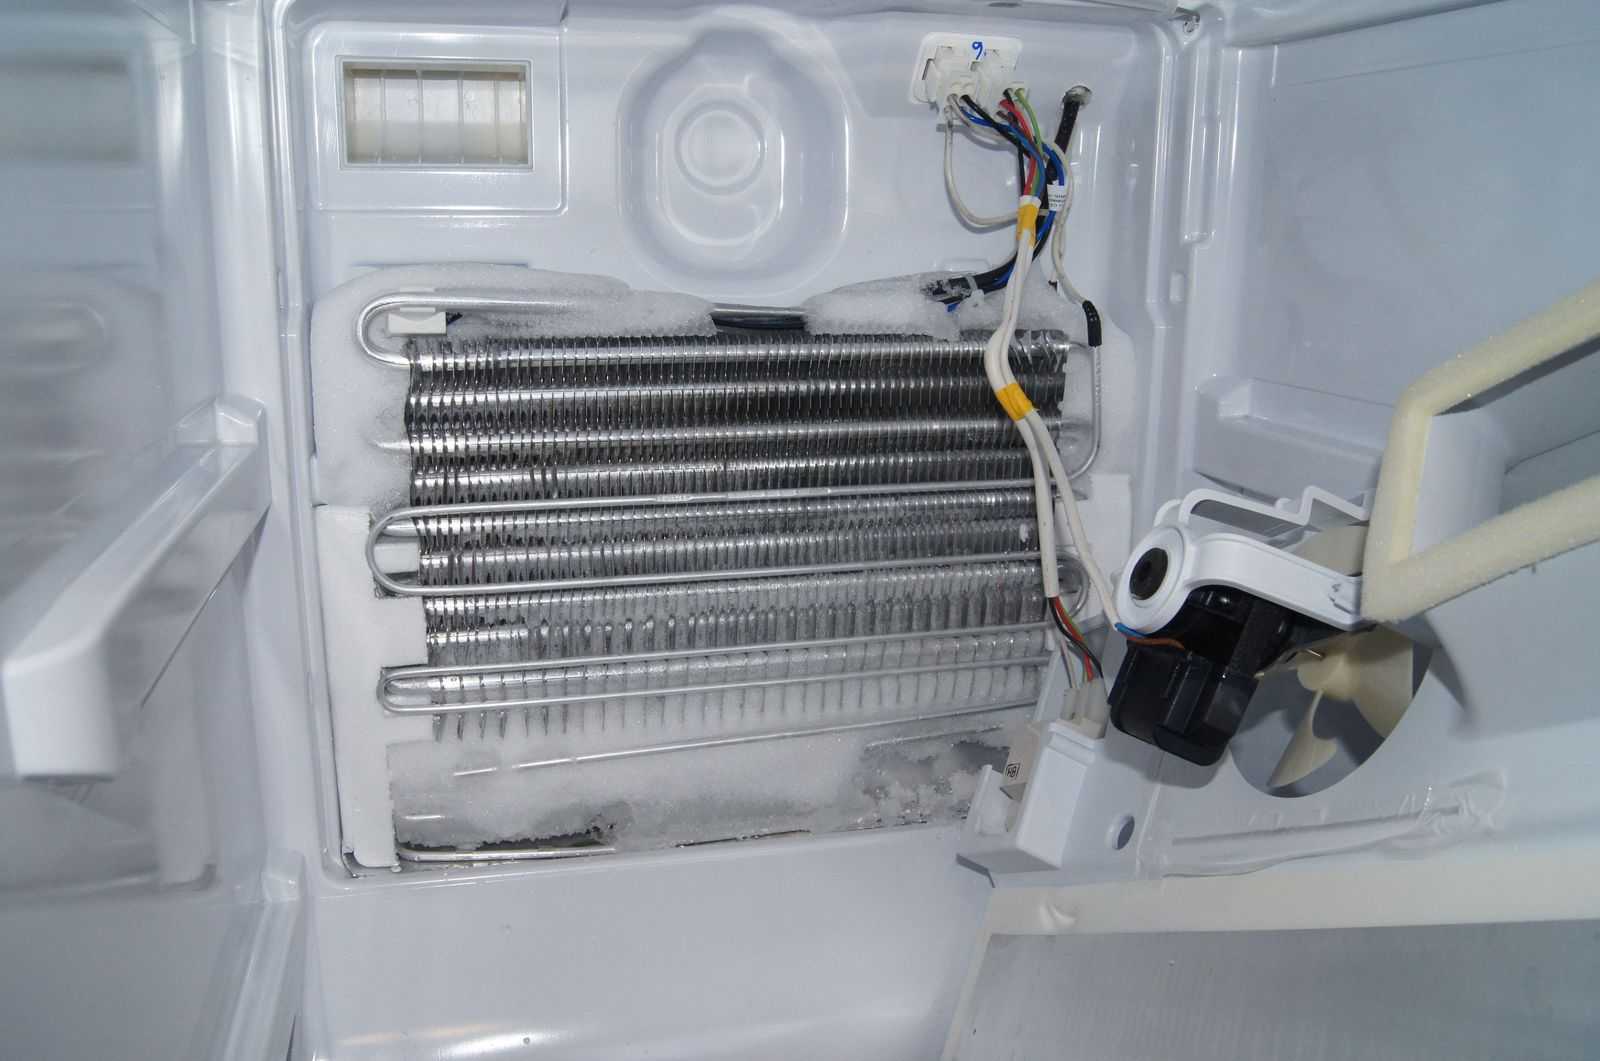 Устранение неисправностей холодильника Аристон Хотпоинт-Аристон Что делать, чтобы решить проблему, если холодильник не морозит, трещит, выключается